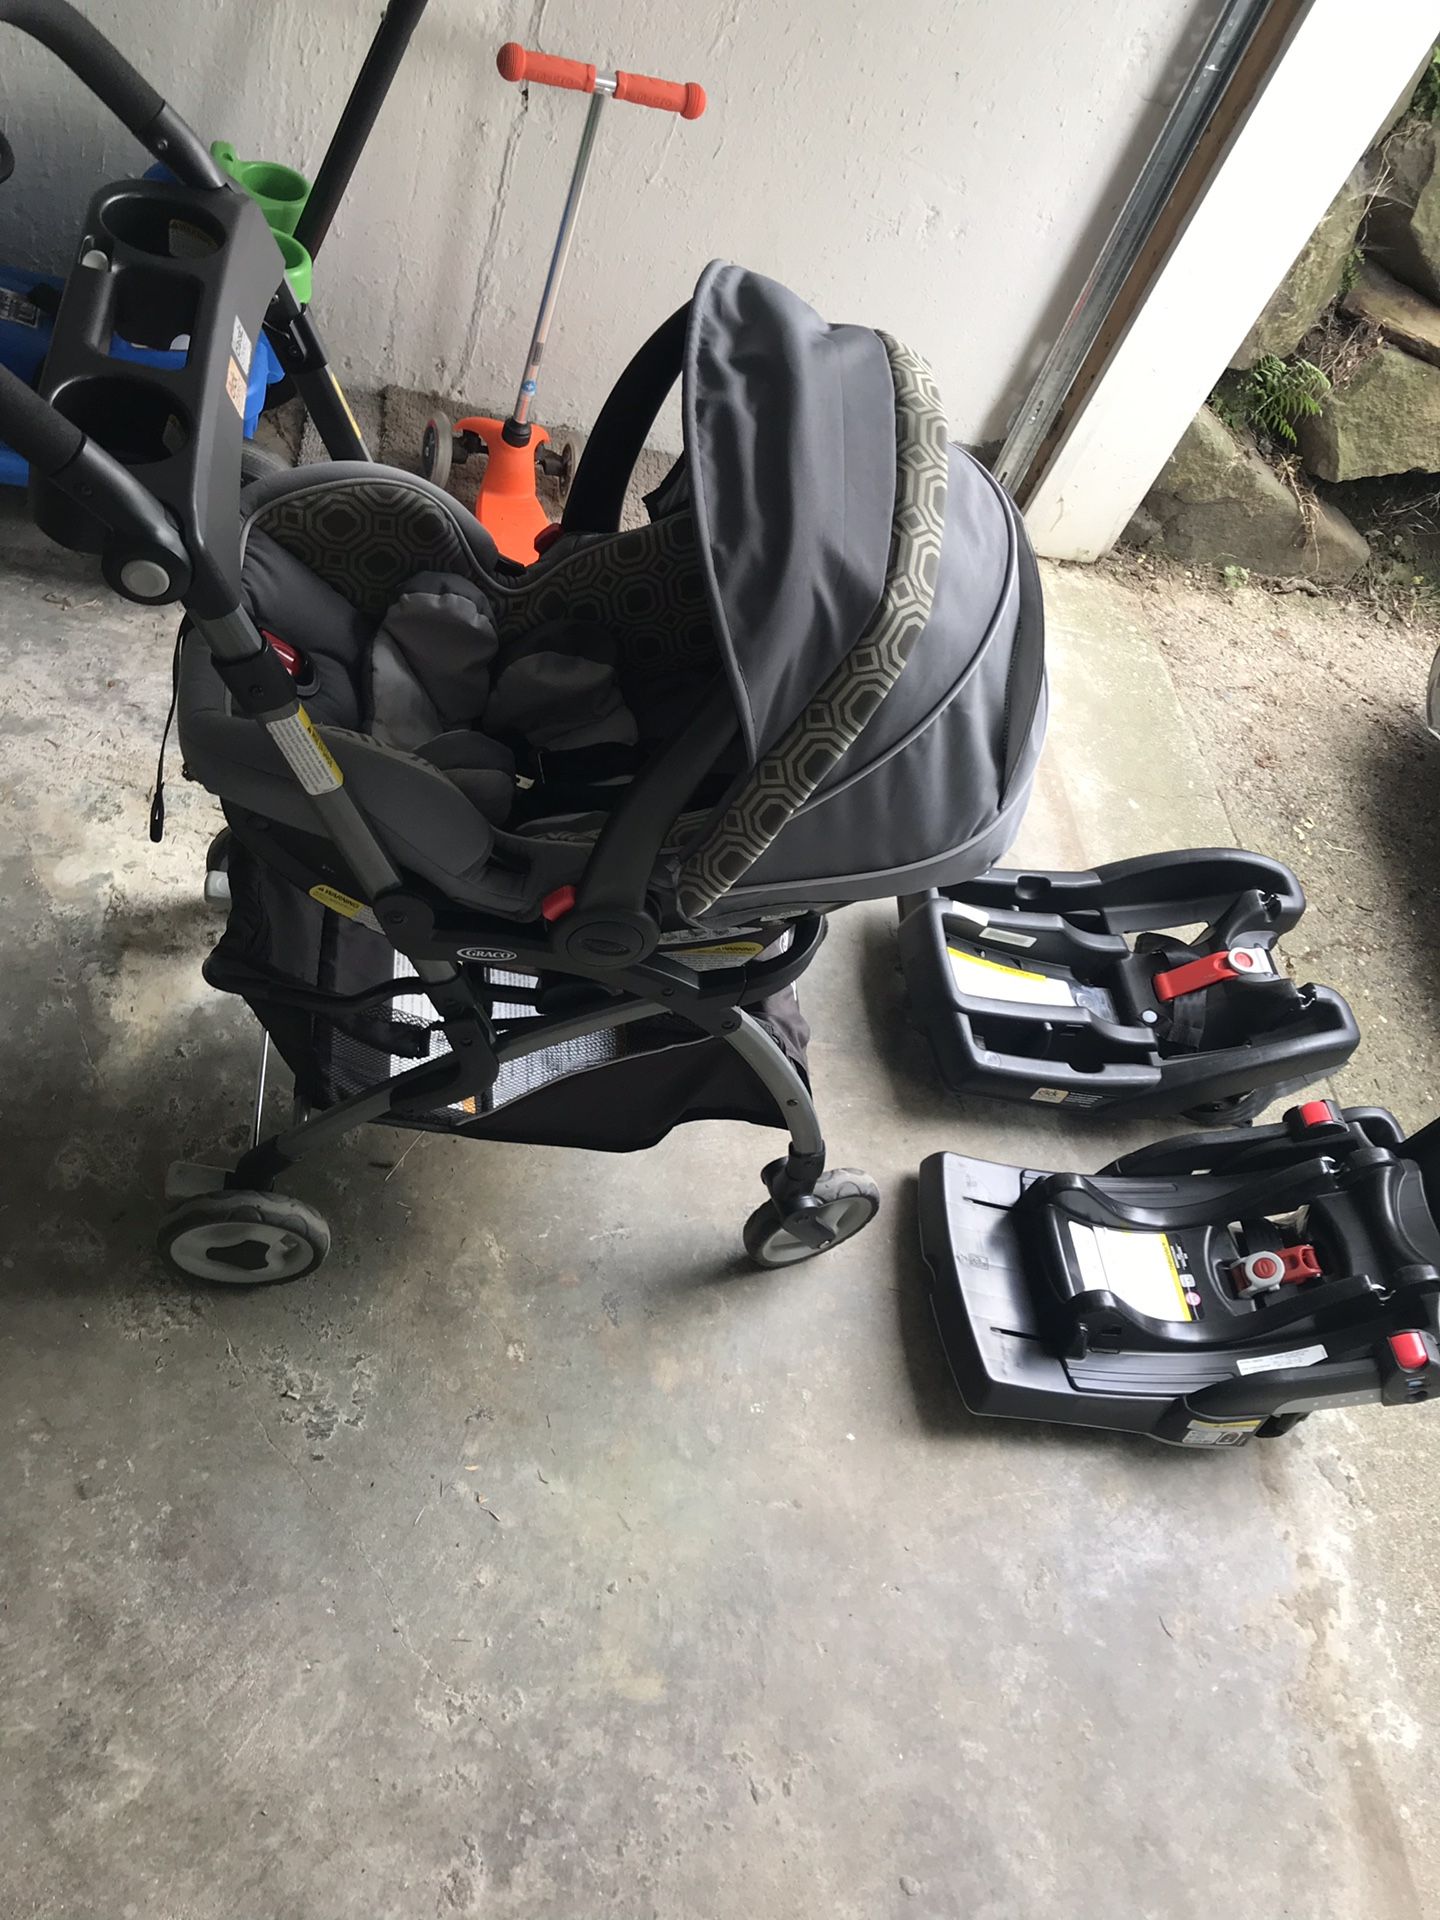 Infant car seat, stroller frame and 2 bases, $75